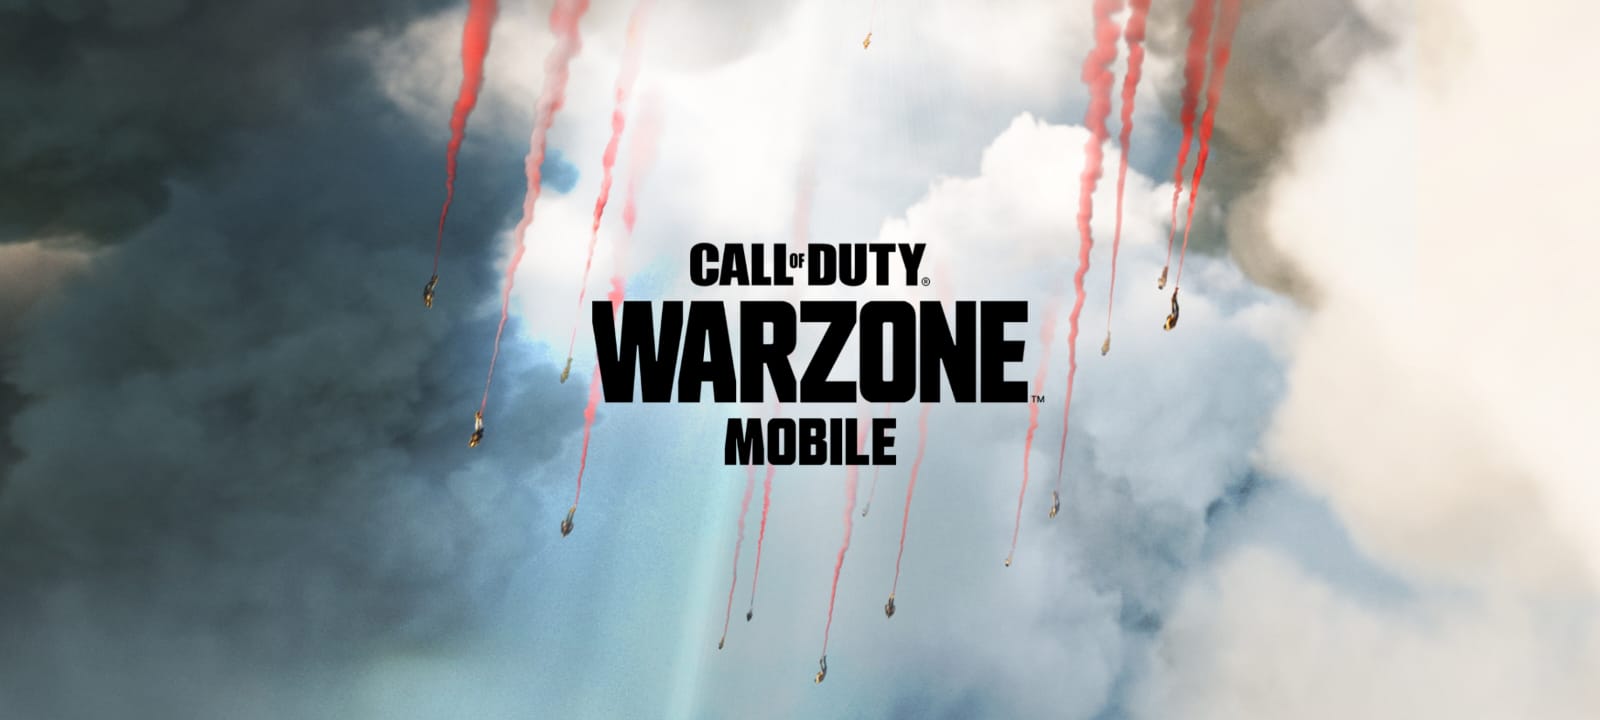 Link Download Warzone Mobile Ada di Sini, Berikut Cara Install-nya